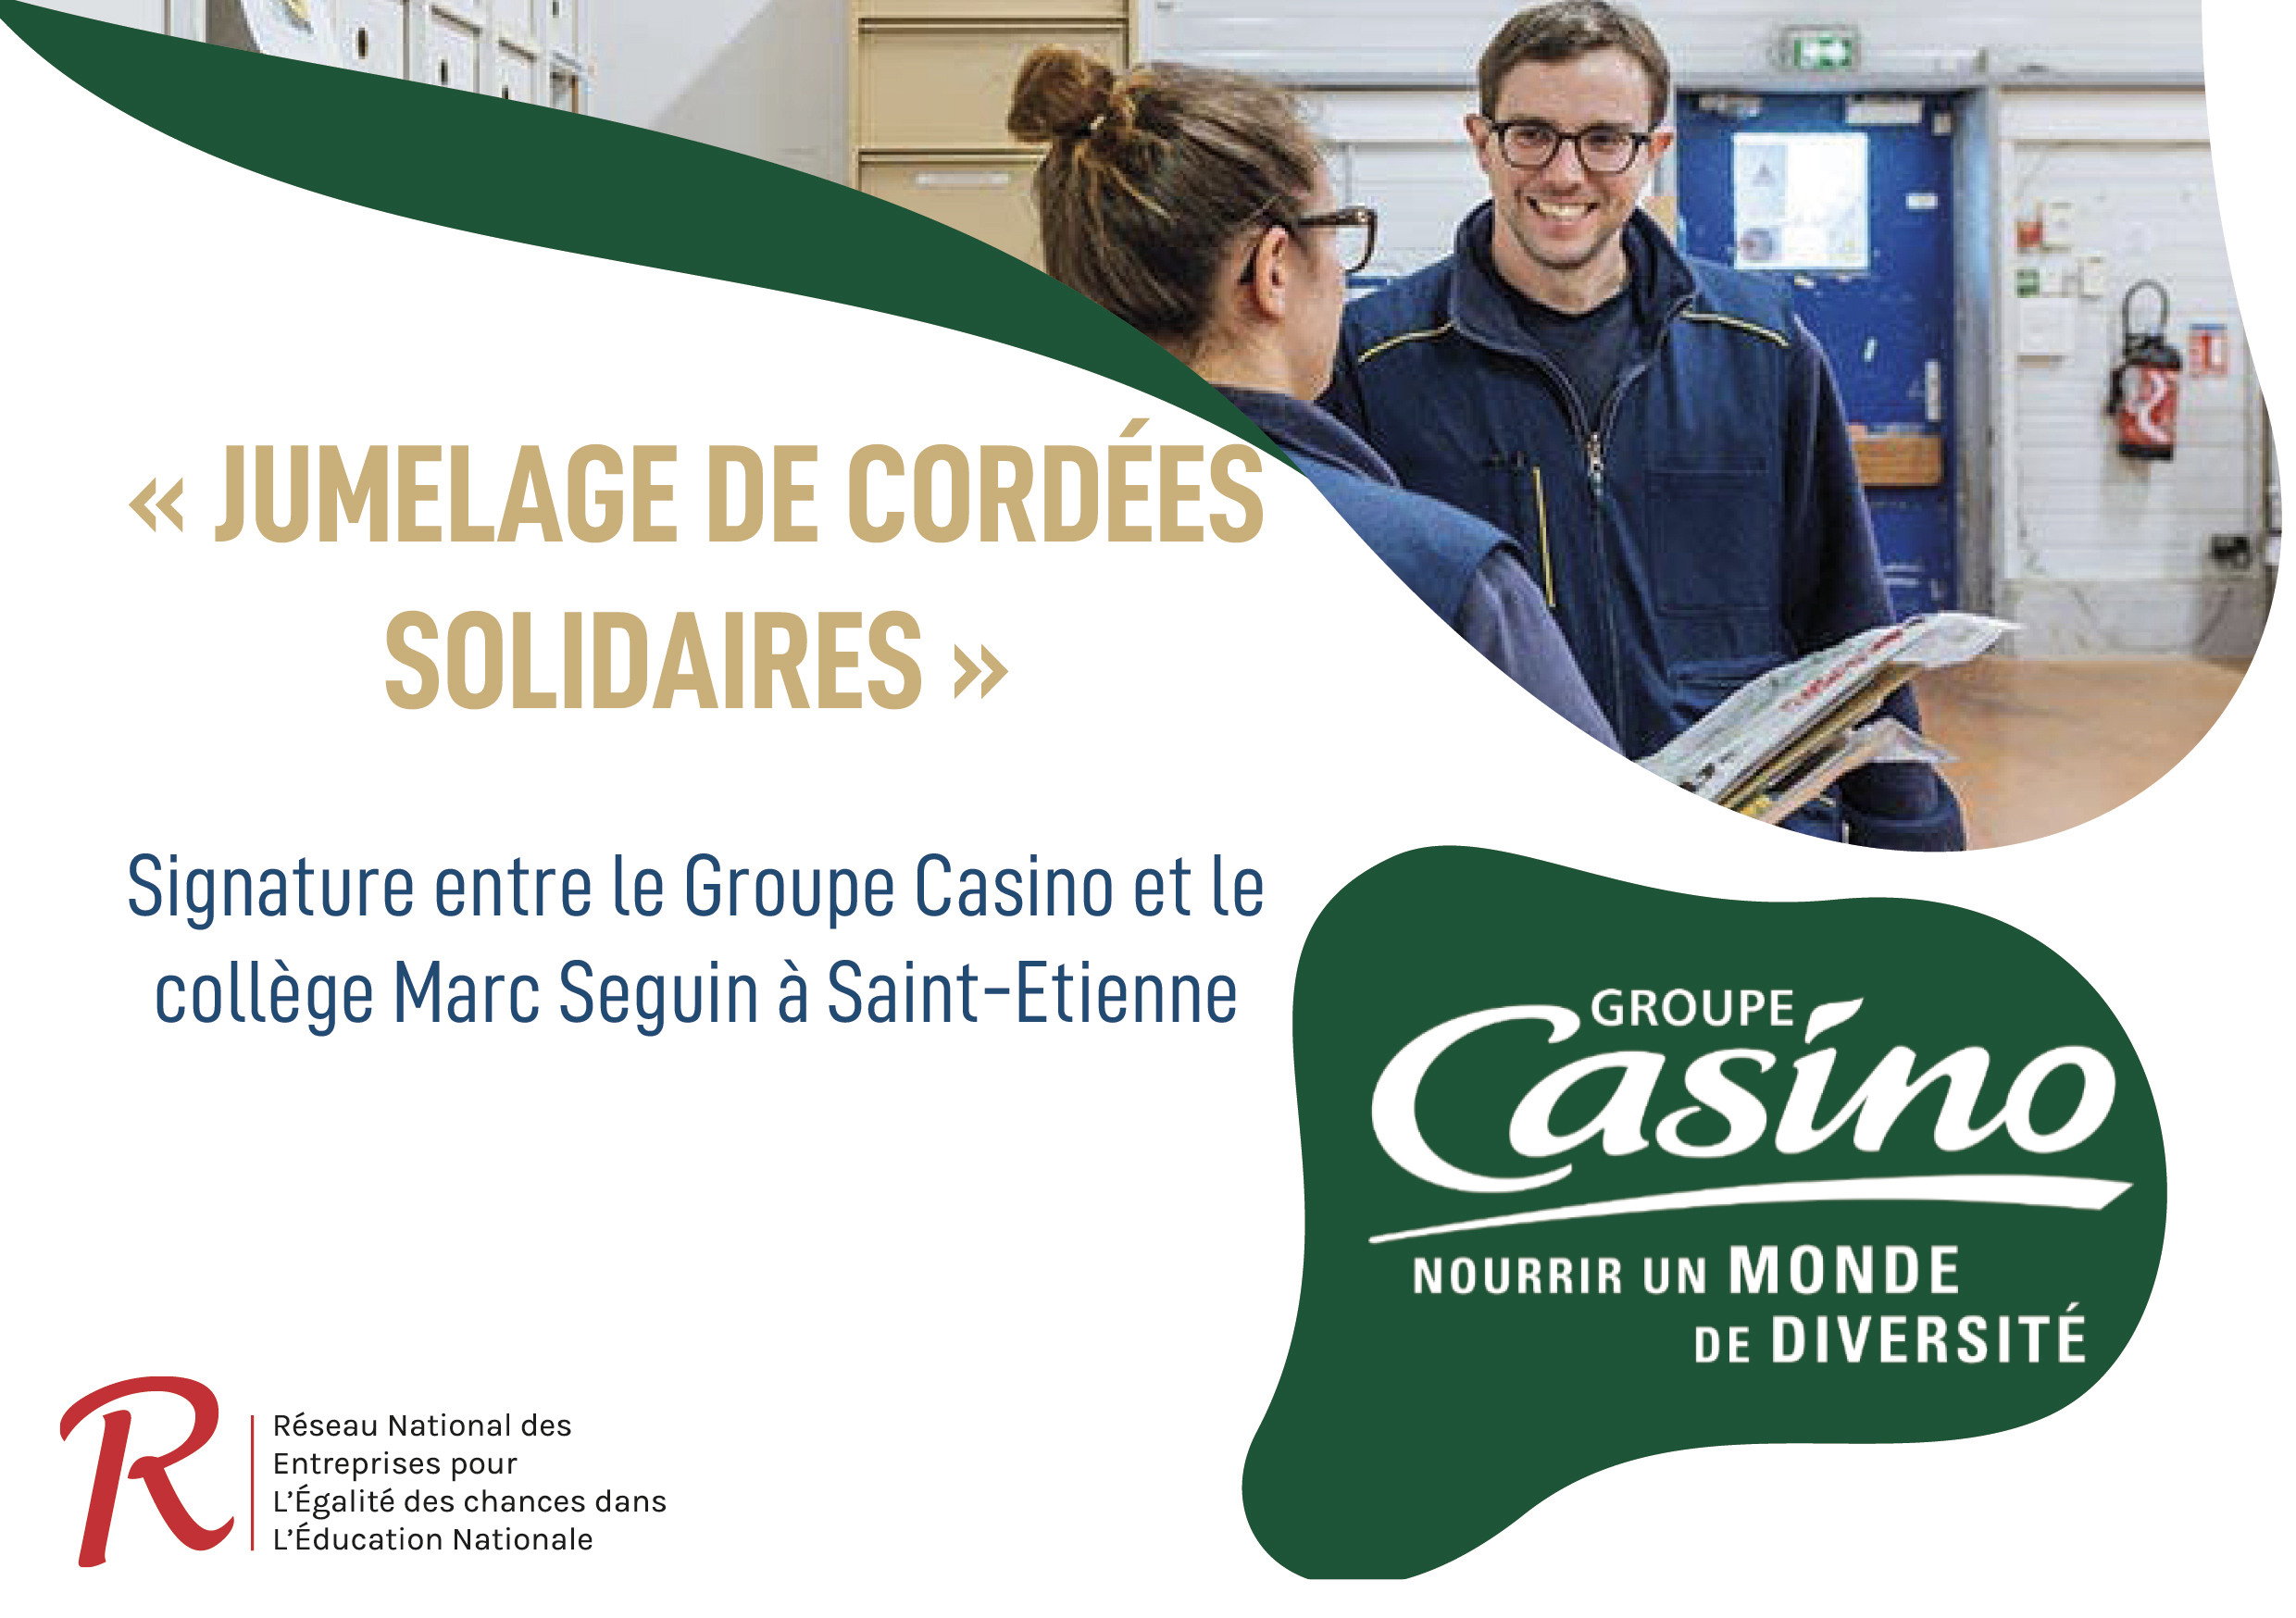 Signature d’un nouveau « Jumelage de cordées solidaires » entre le Groupe Casino et le collège Marc Seguin à Saint-Etienne